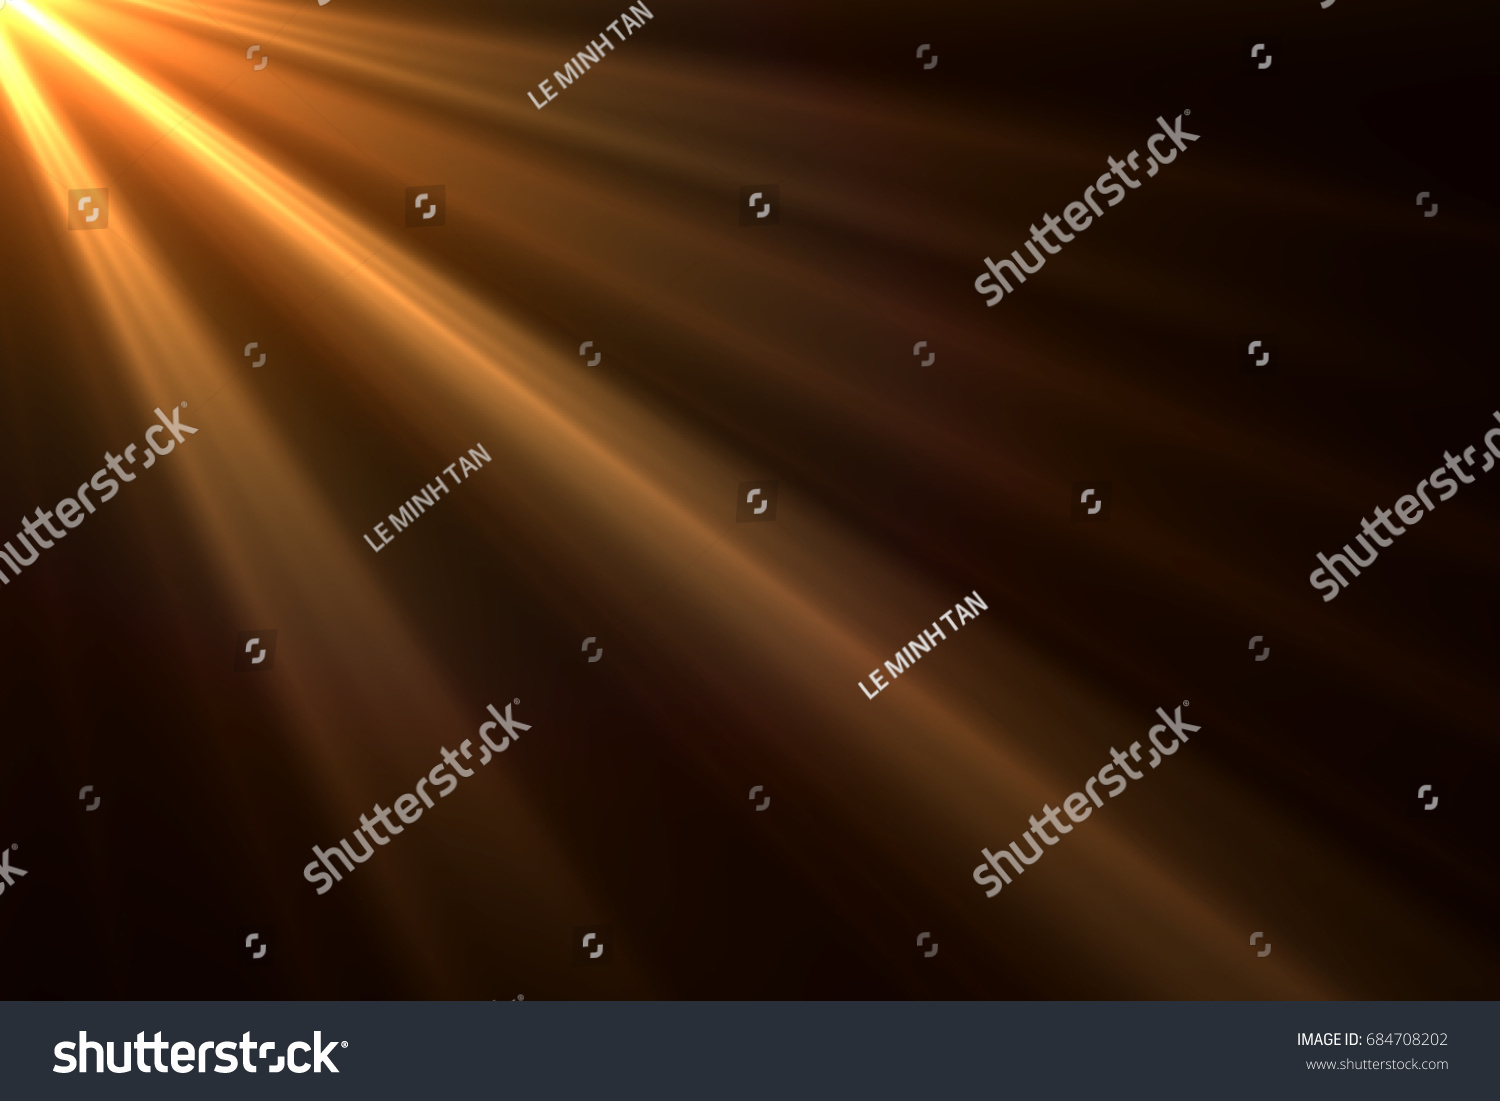 Sonnenstrahlen Licht isoliert auf schwarzem Hintergrund für Overlay-Design #684708202